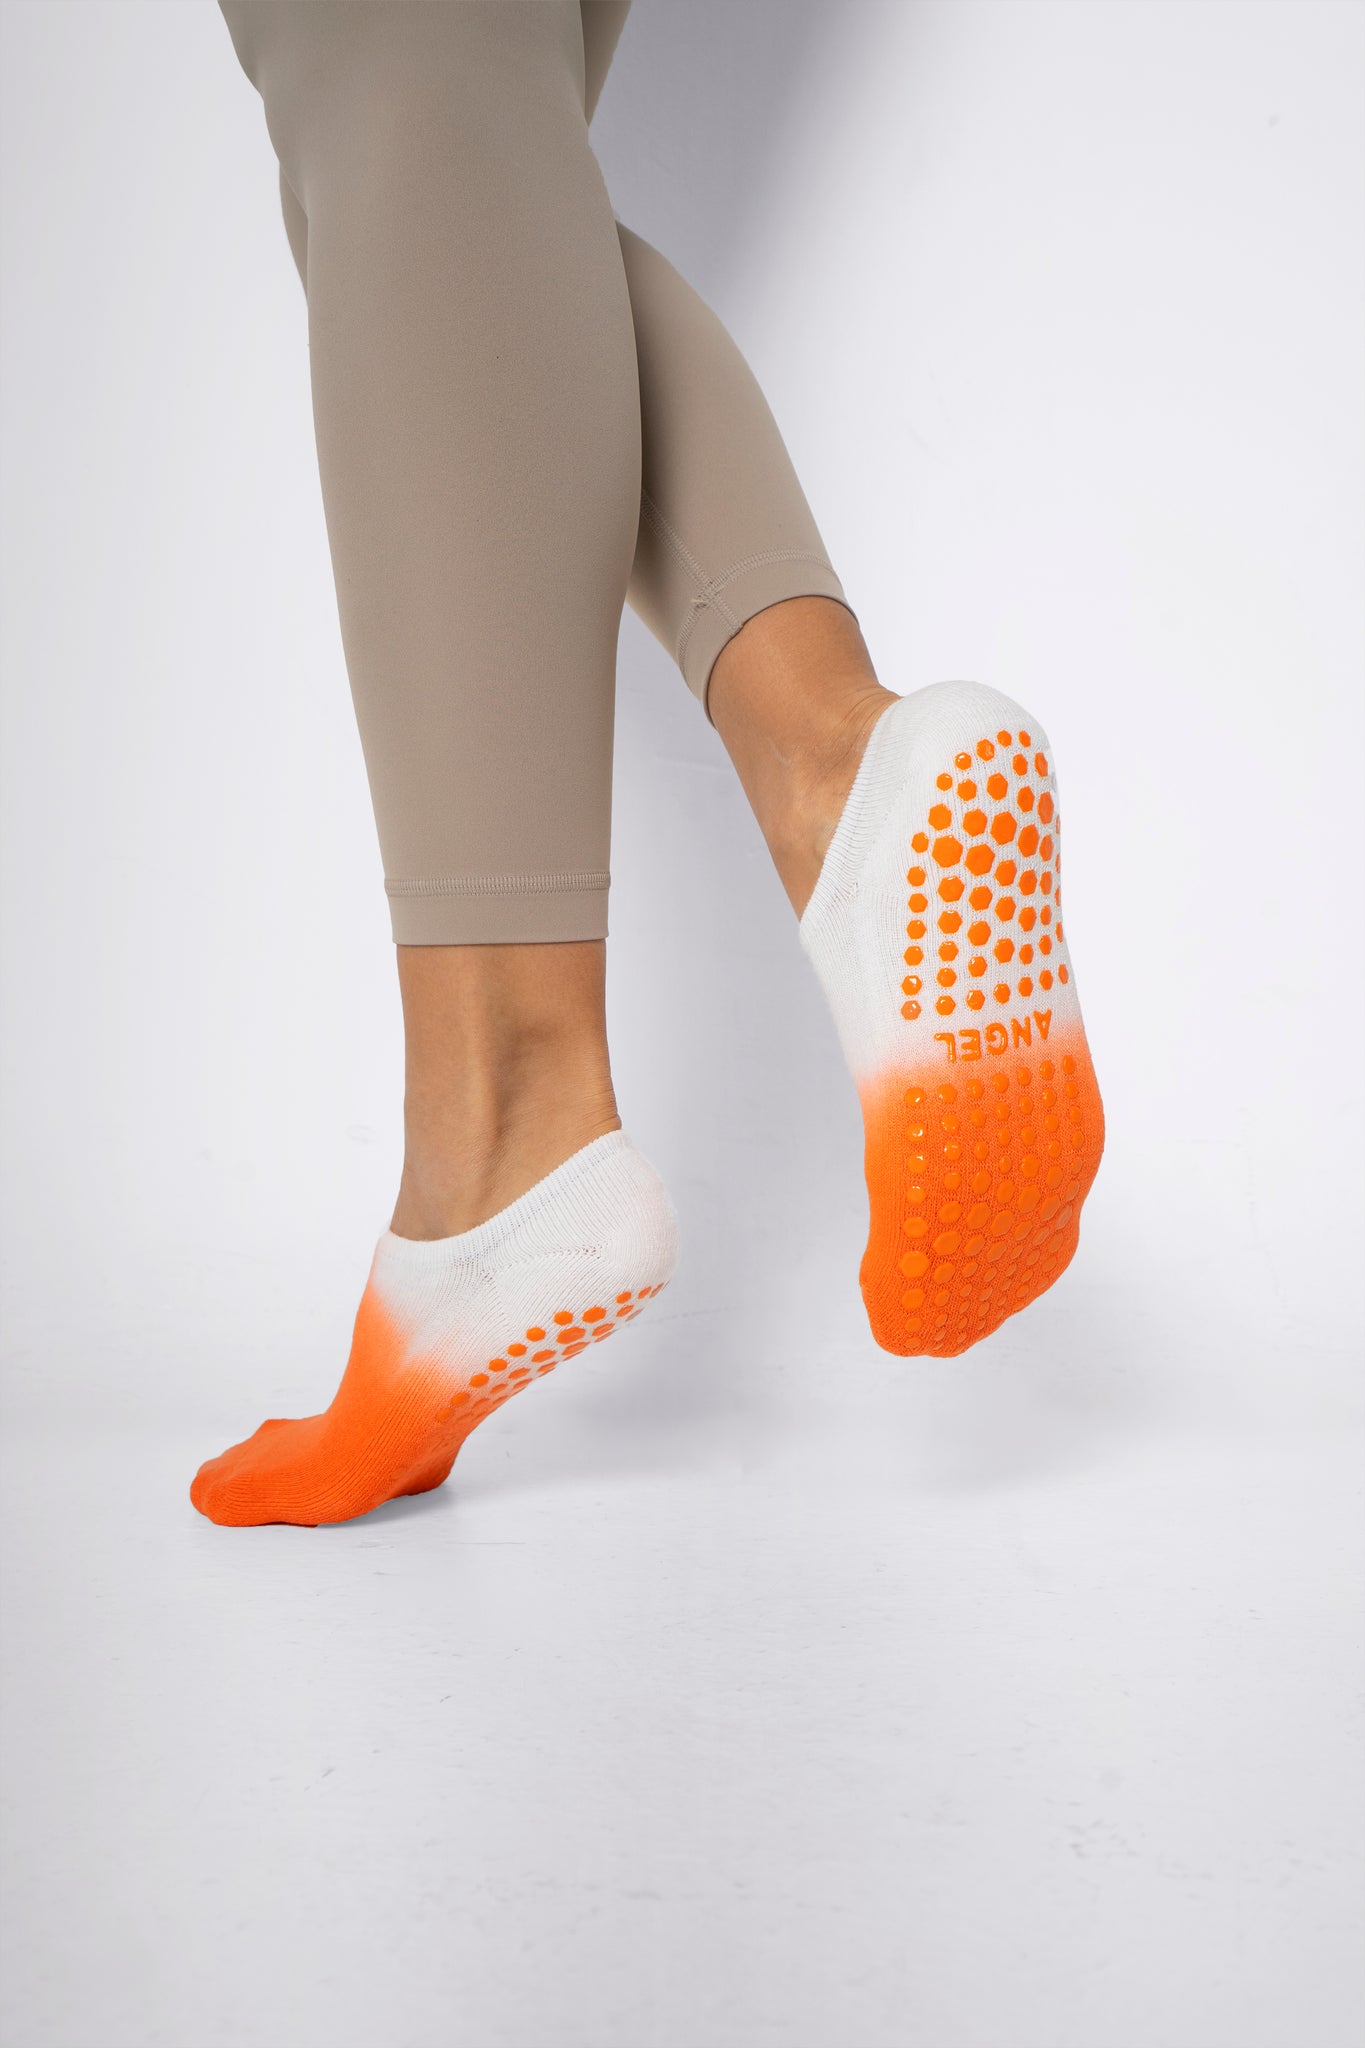 Soar Low Rise Tie-Dye Non Slip Grip Socks